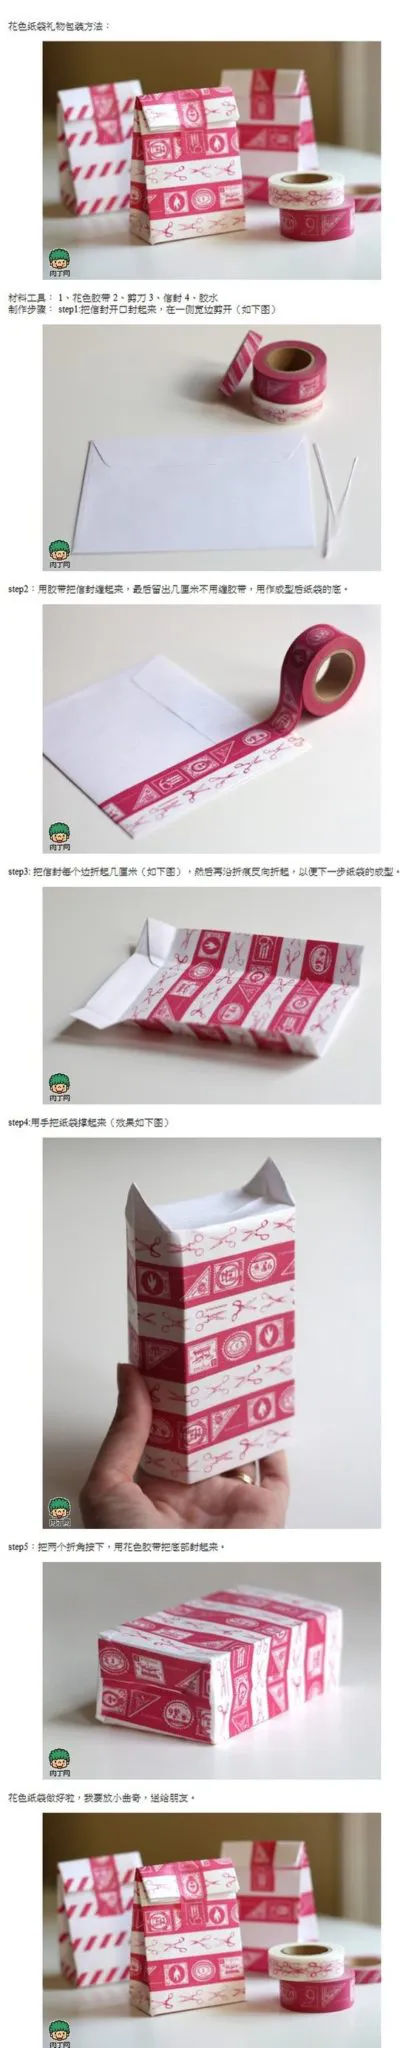 Divertidas cajas de cintas washi con sobres reciclados